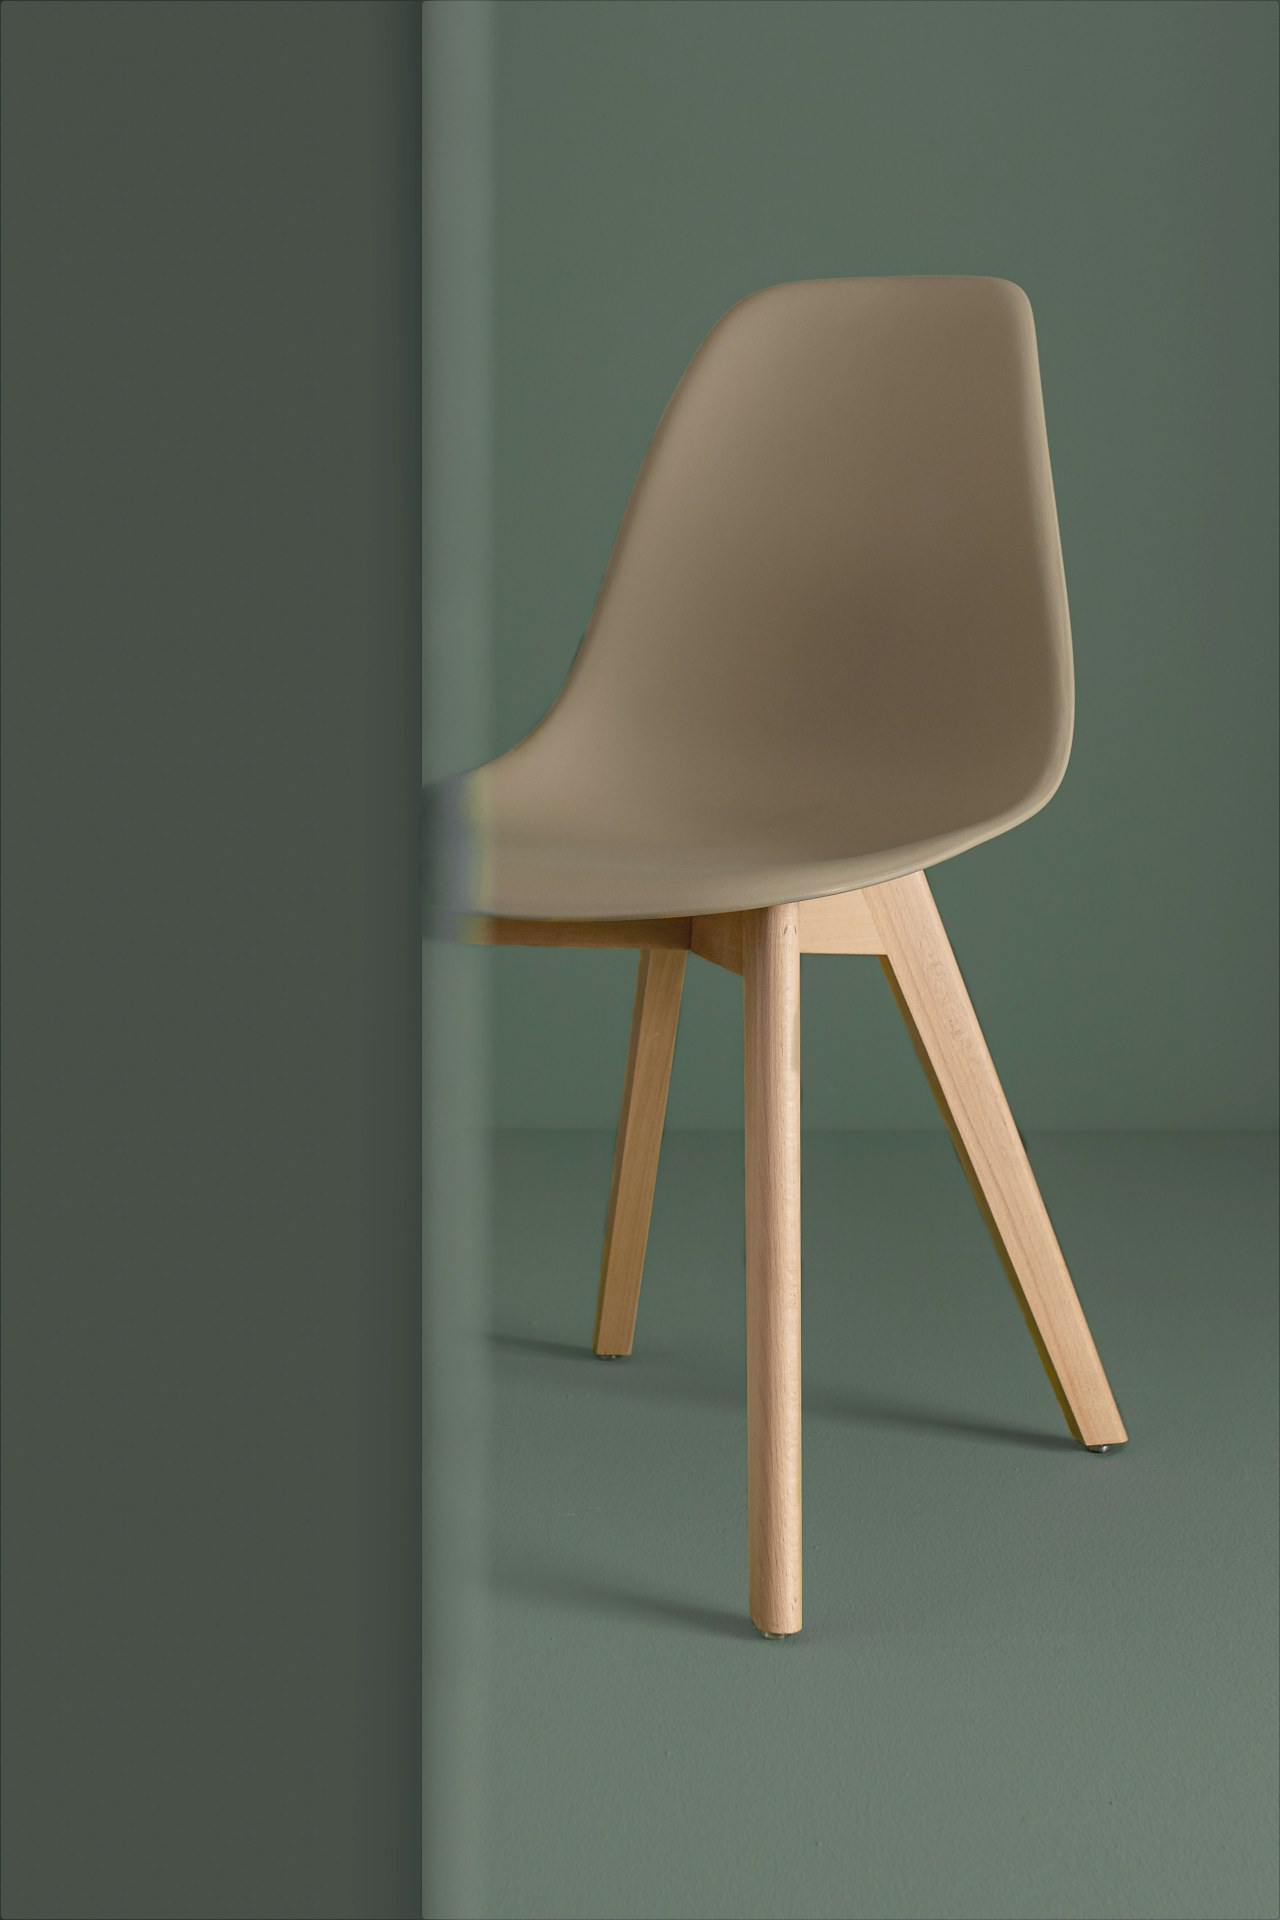 Der Stuhl System überzeugt mit seinem modernem Design. Gefertigt wurde der Stuhl aus Kunststoff, welcher einen Taupe Farbton besitzt. Das Gestell ist aus Buchenholz. Die Sitzhöhe des Stuhls ist 46 cm